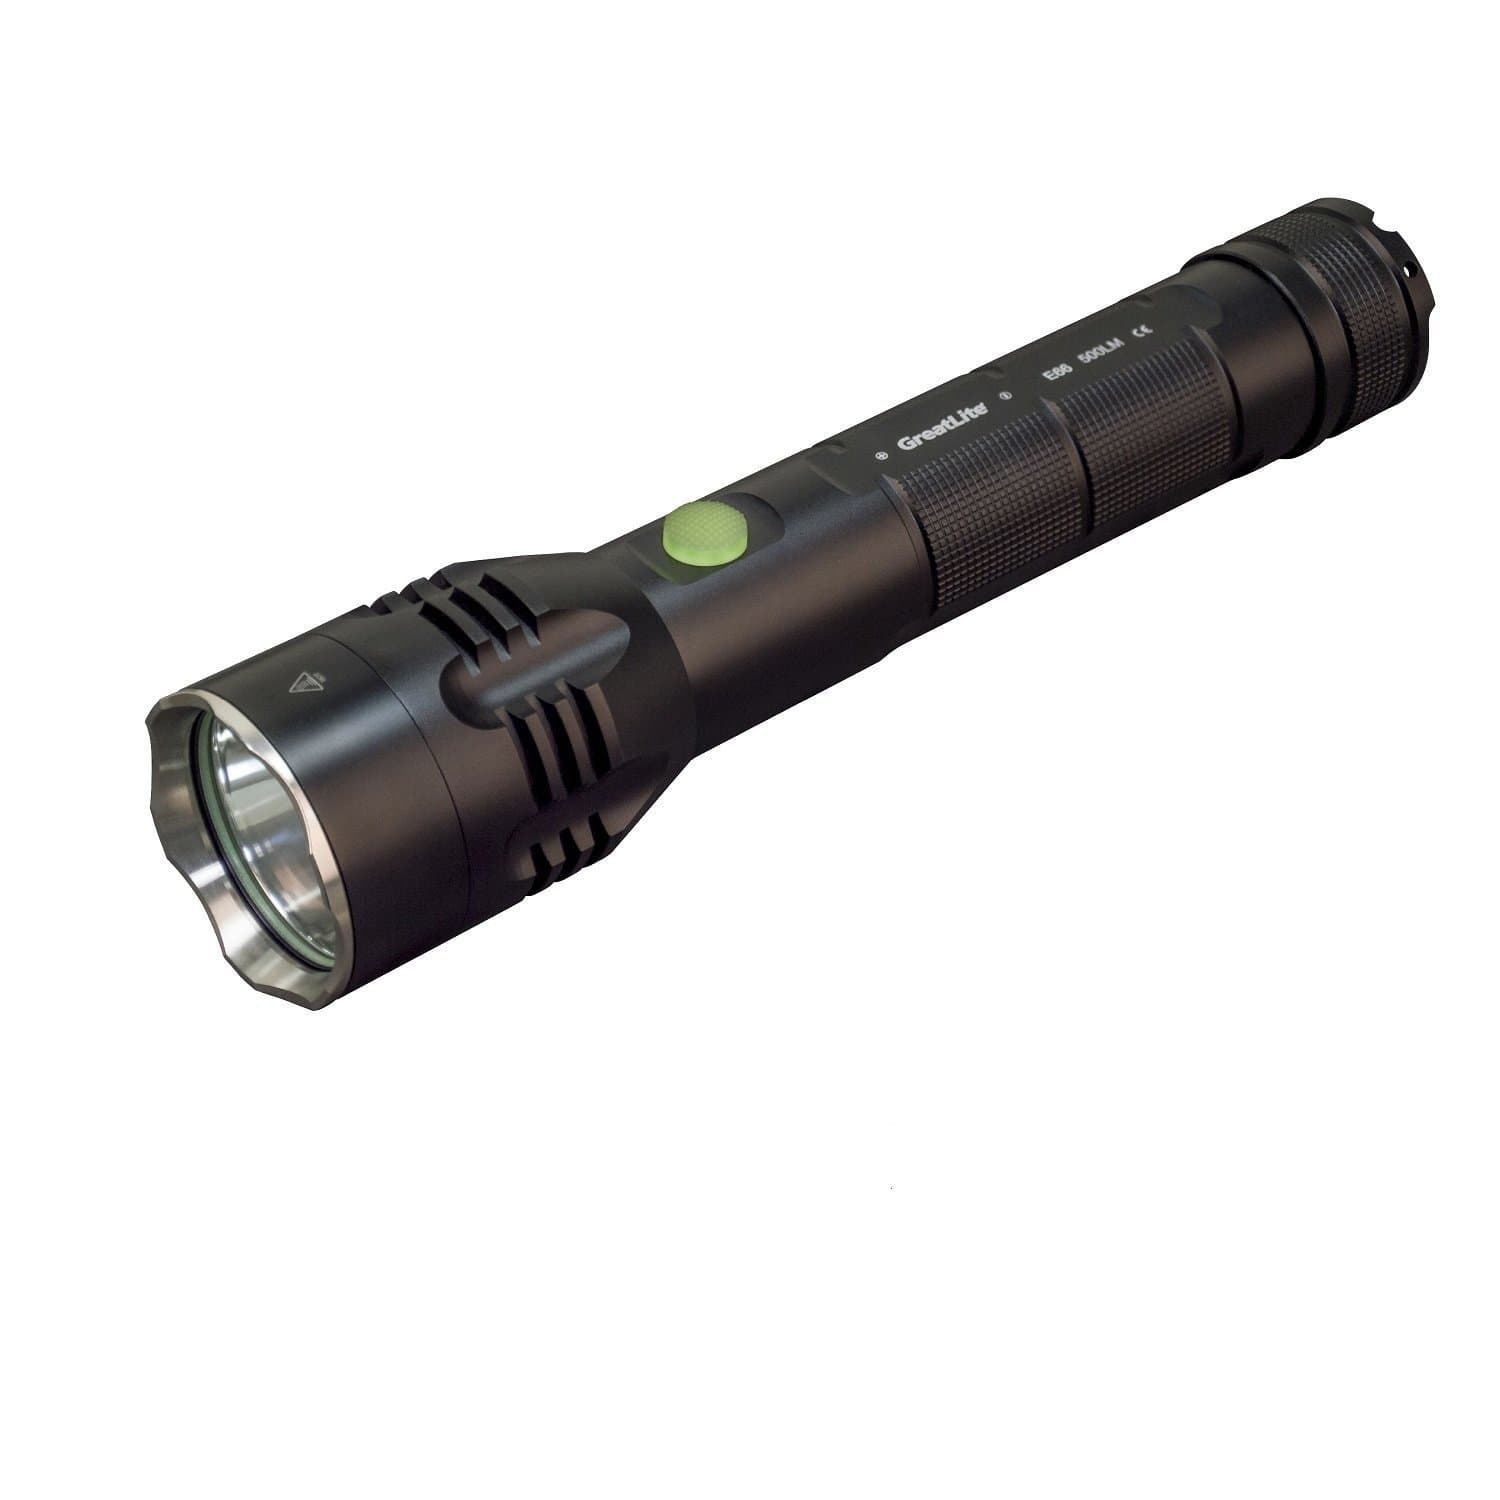 Greatlite Lights : Tactical Lights Greatlite Tactical 600 Lumen 2D LED Flashlight